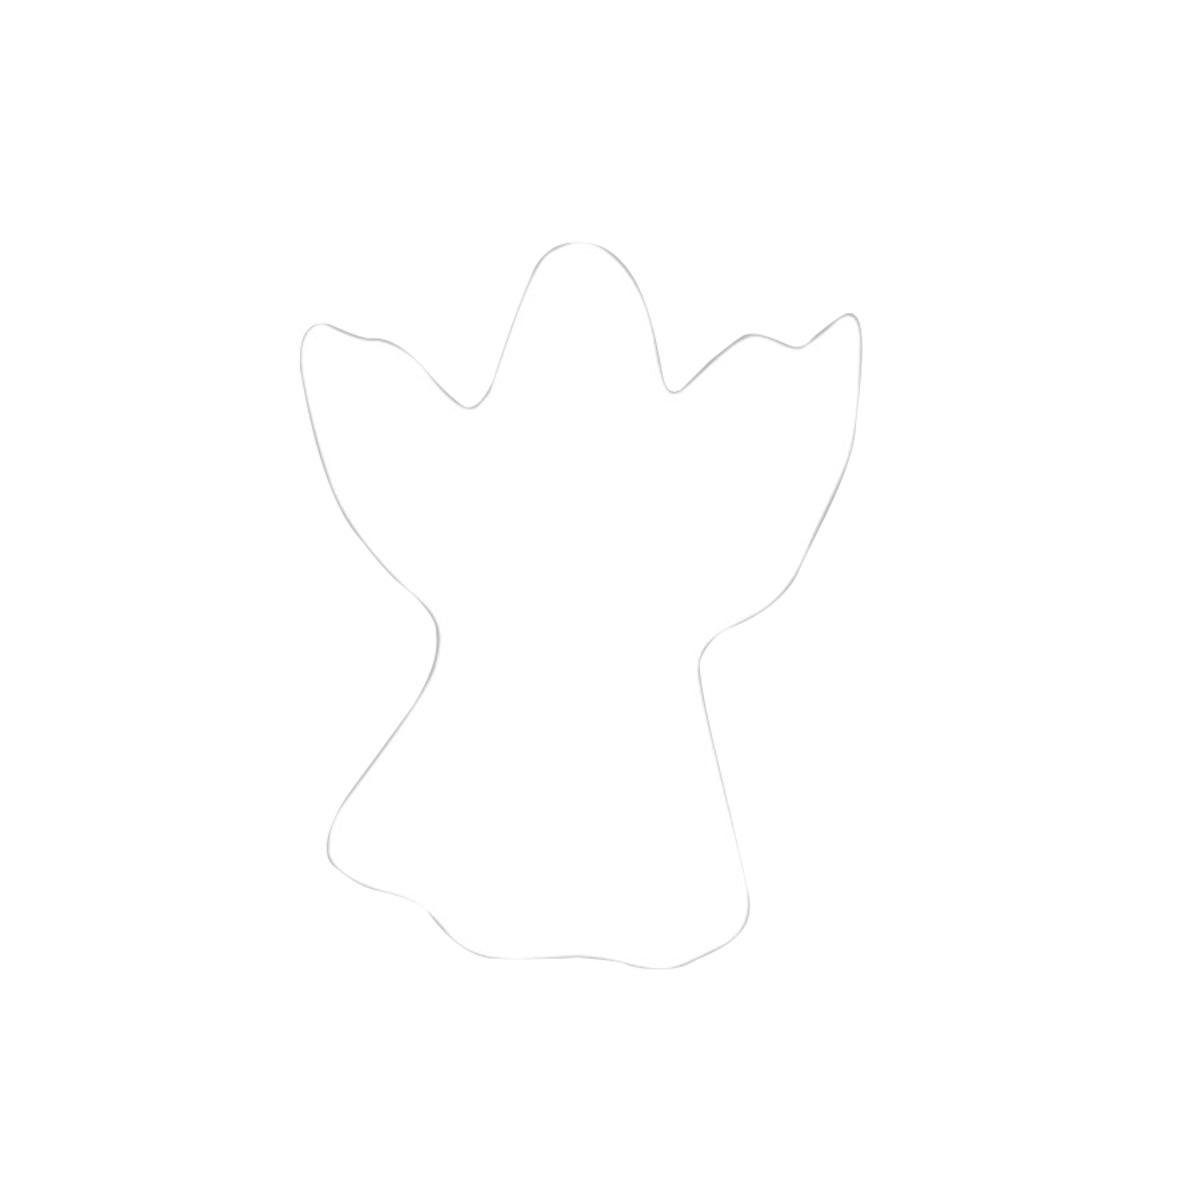 Lot de 2 silhouettes de fantome - Bois - 3,5 x 2,5 cm - Blanc